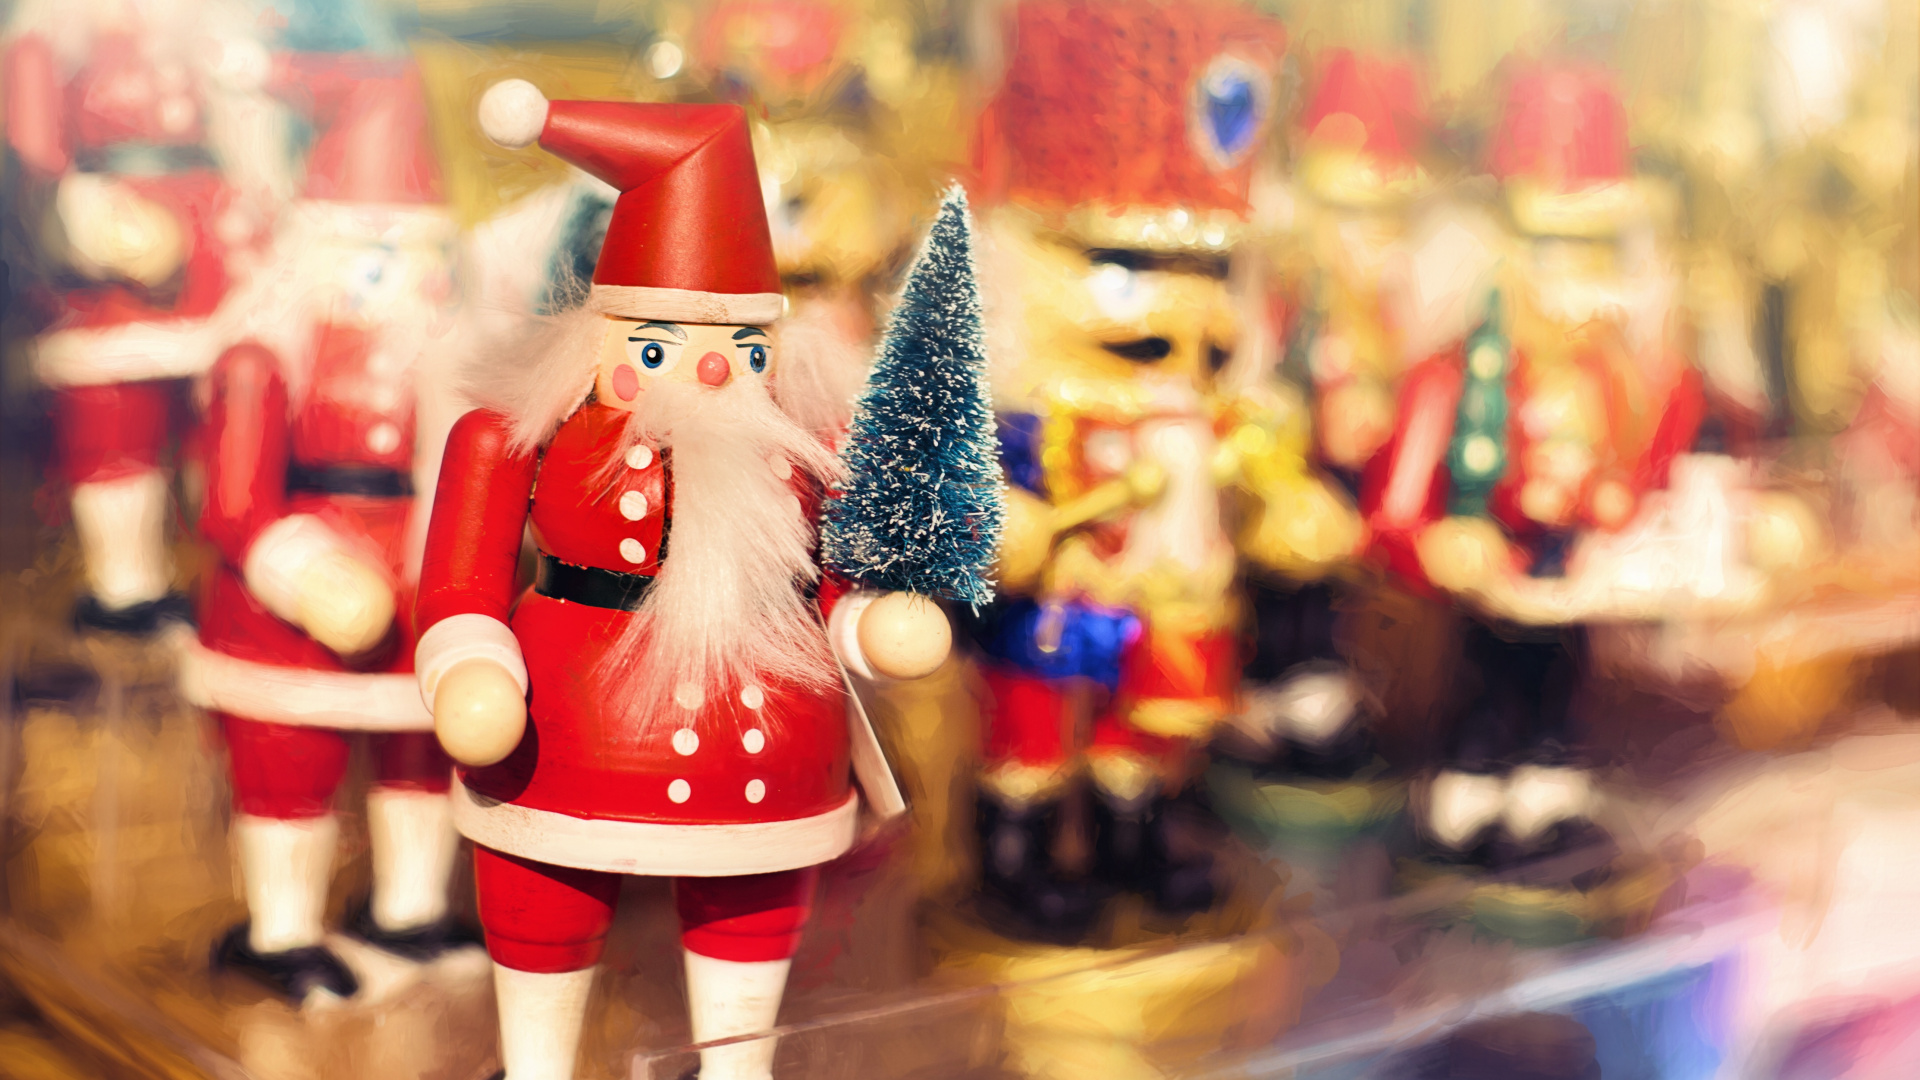 Weihnachten, Weihnachtsmann, Nussknacker, Spielzeug, Christmas Ornament. Wallpaper in 1920x1080 Resolution